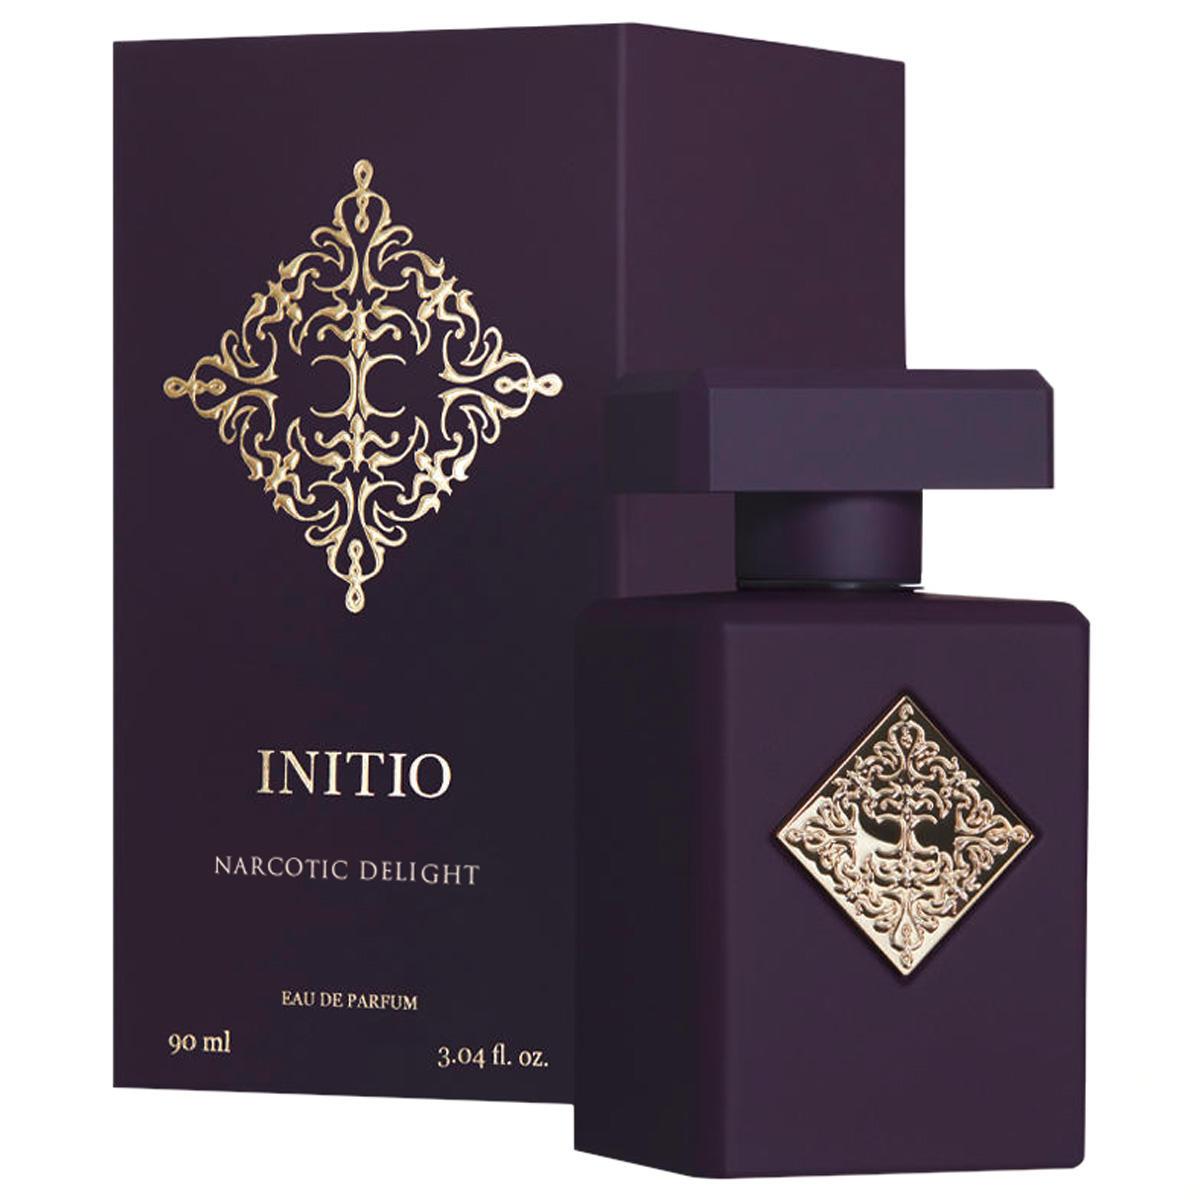 INITIO The Carnal Blends Narcotic Delight Eau de Parfum 90 ml - 2